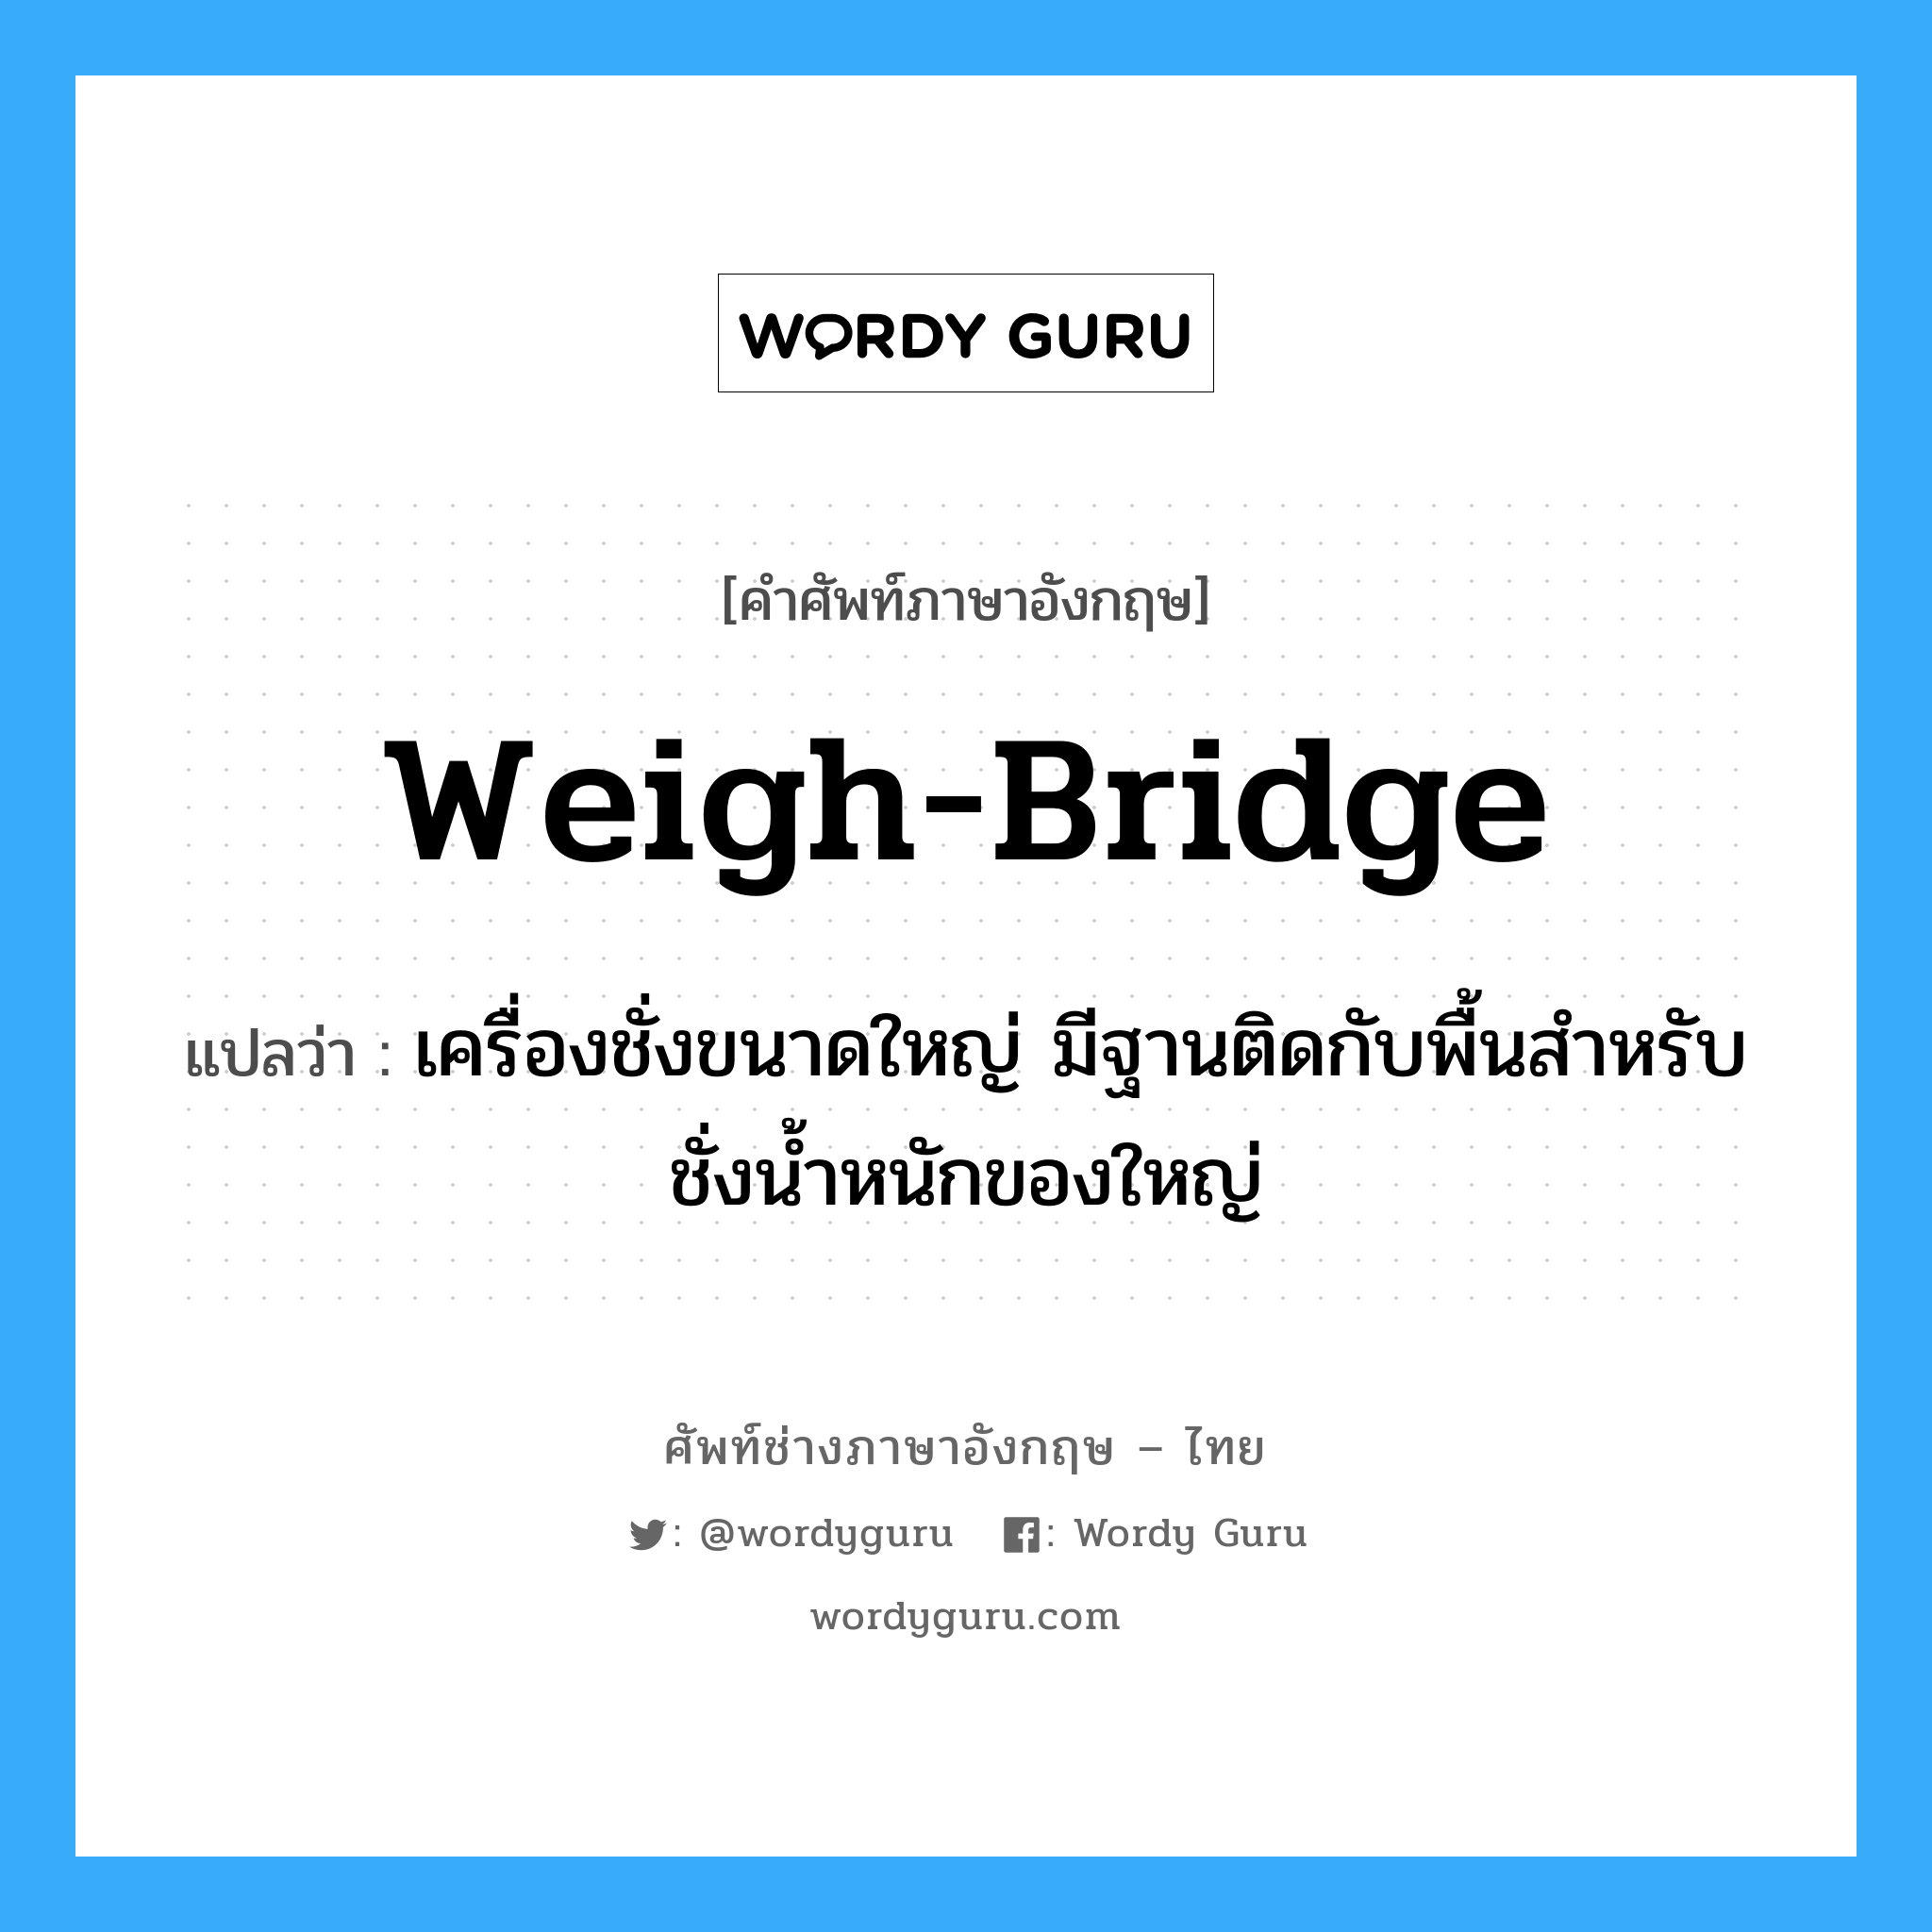 weigh-bridge แปลว่า?, คำศัพท์ช่างภาษาอังกฤษ - ไทย weigh-bridge คำศัพท์ภาษาอังกฤษ weigh-bridge แปลว่า เครื่องชั่งขนาดใหญ่ มีฐานติดกับพื้นสำหรับชั่งน้ำหนักของใหญ่